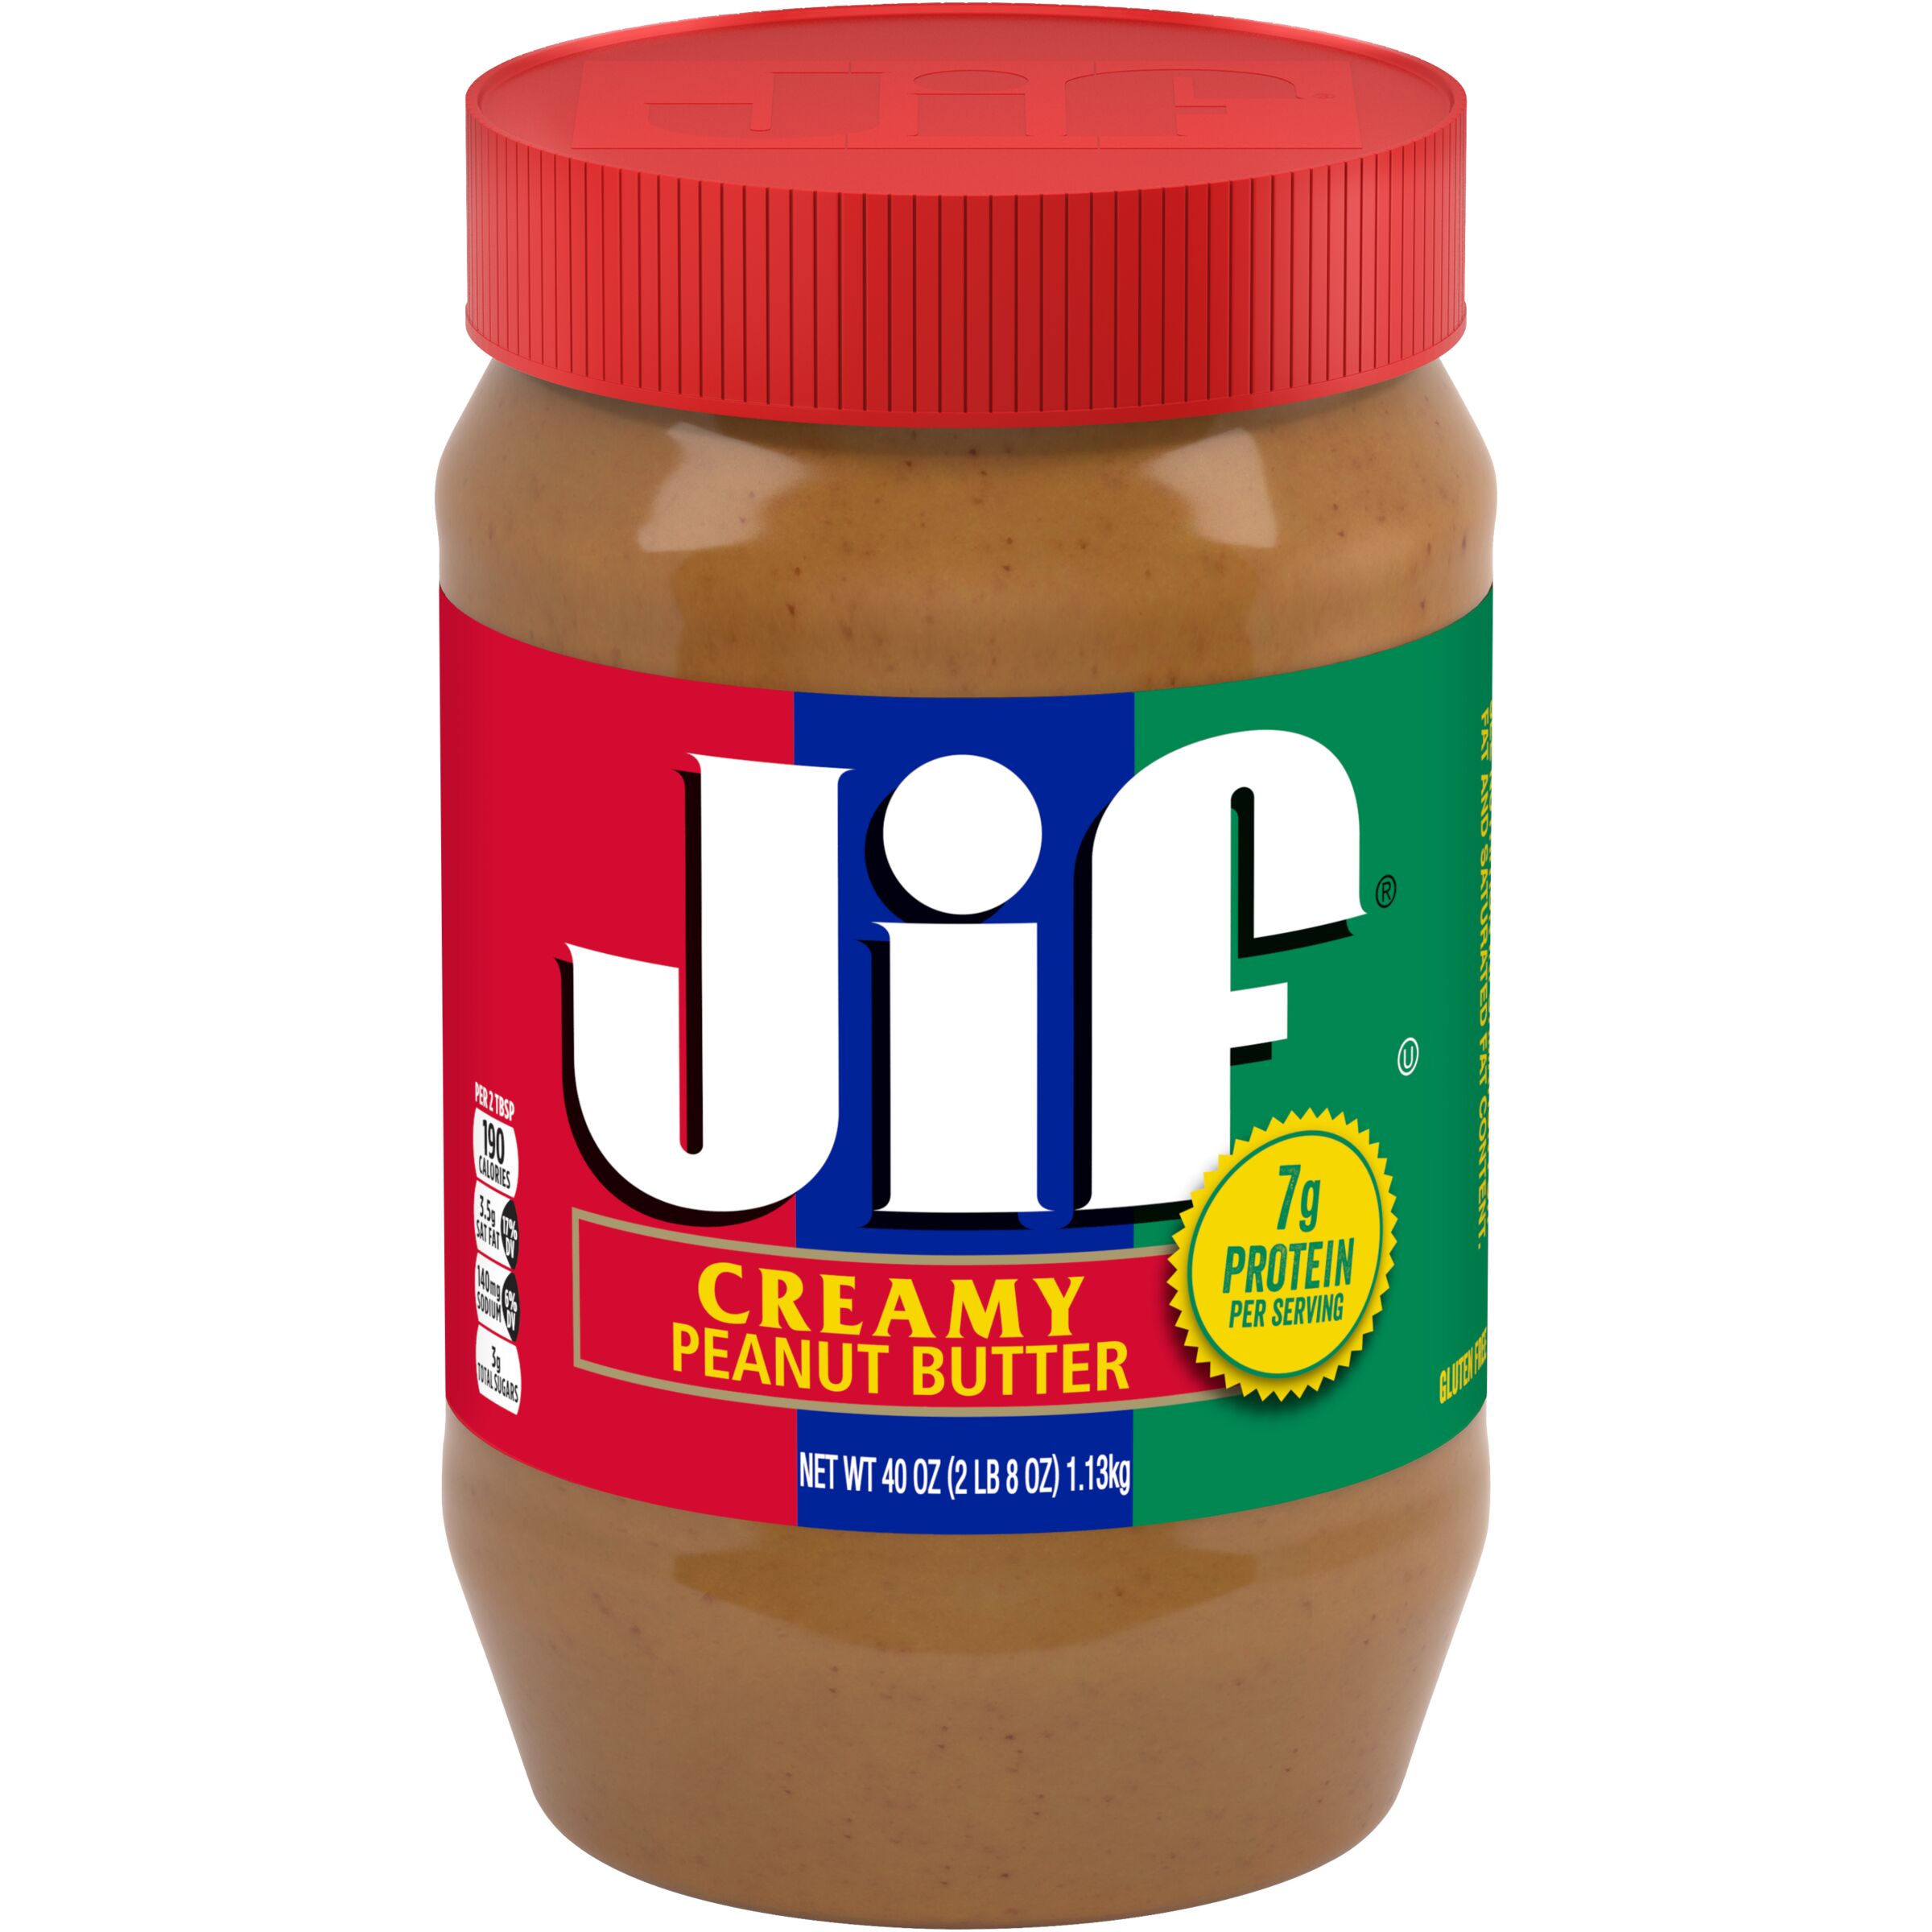 Jif Creamy Peanut Butter, 40-Ounce Jar - image 1 of 8